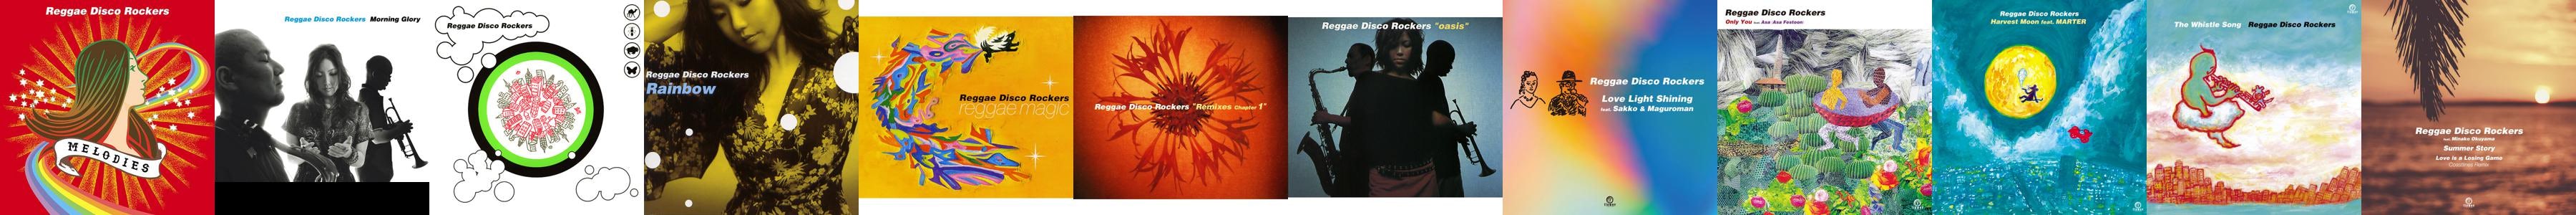 reggae-disco-rockers_12.jpg